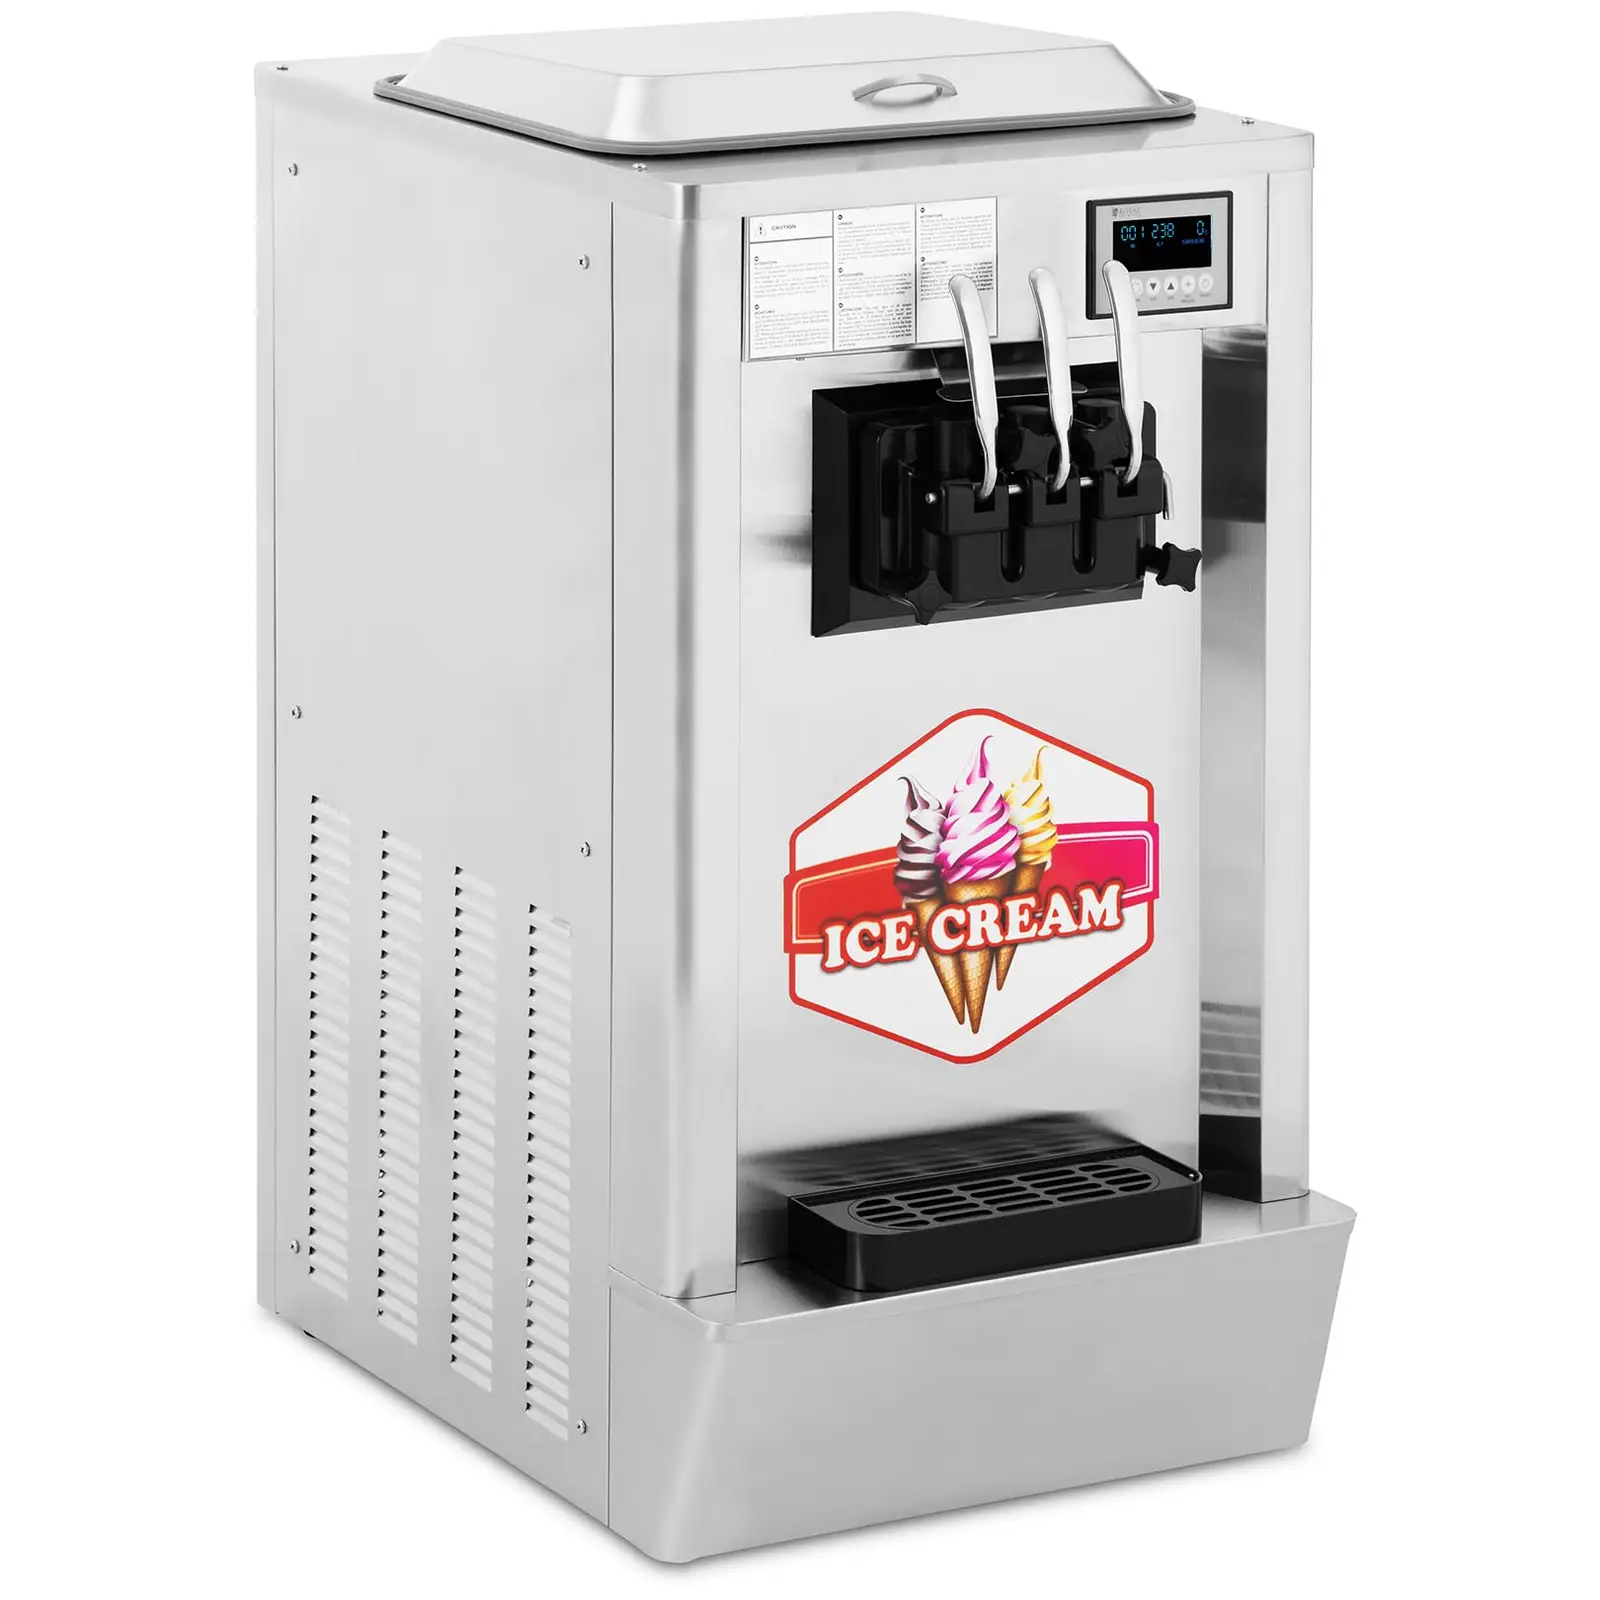 Stroj na točenou zmrzlinu - 1 550 W - 23 l/h - 3 příchutě - Royal Catering